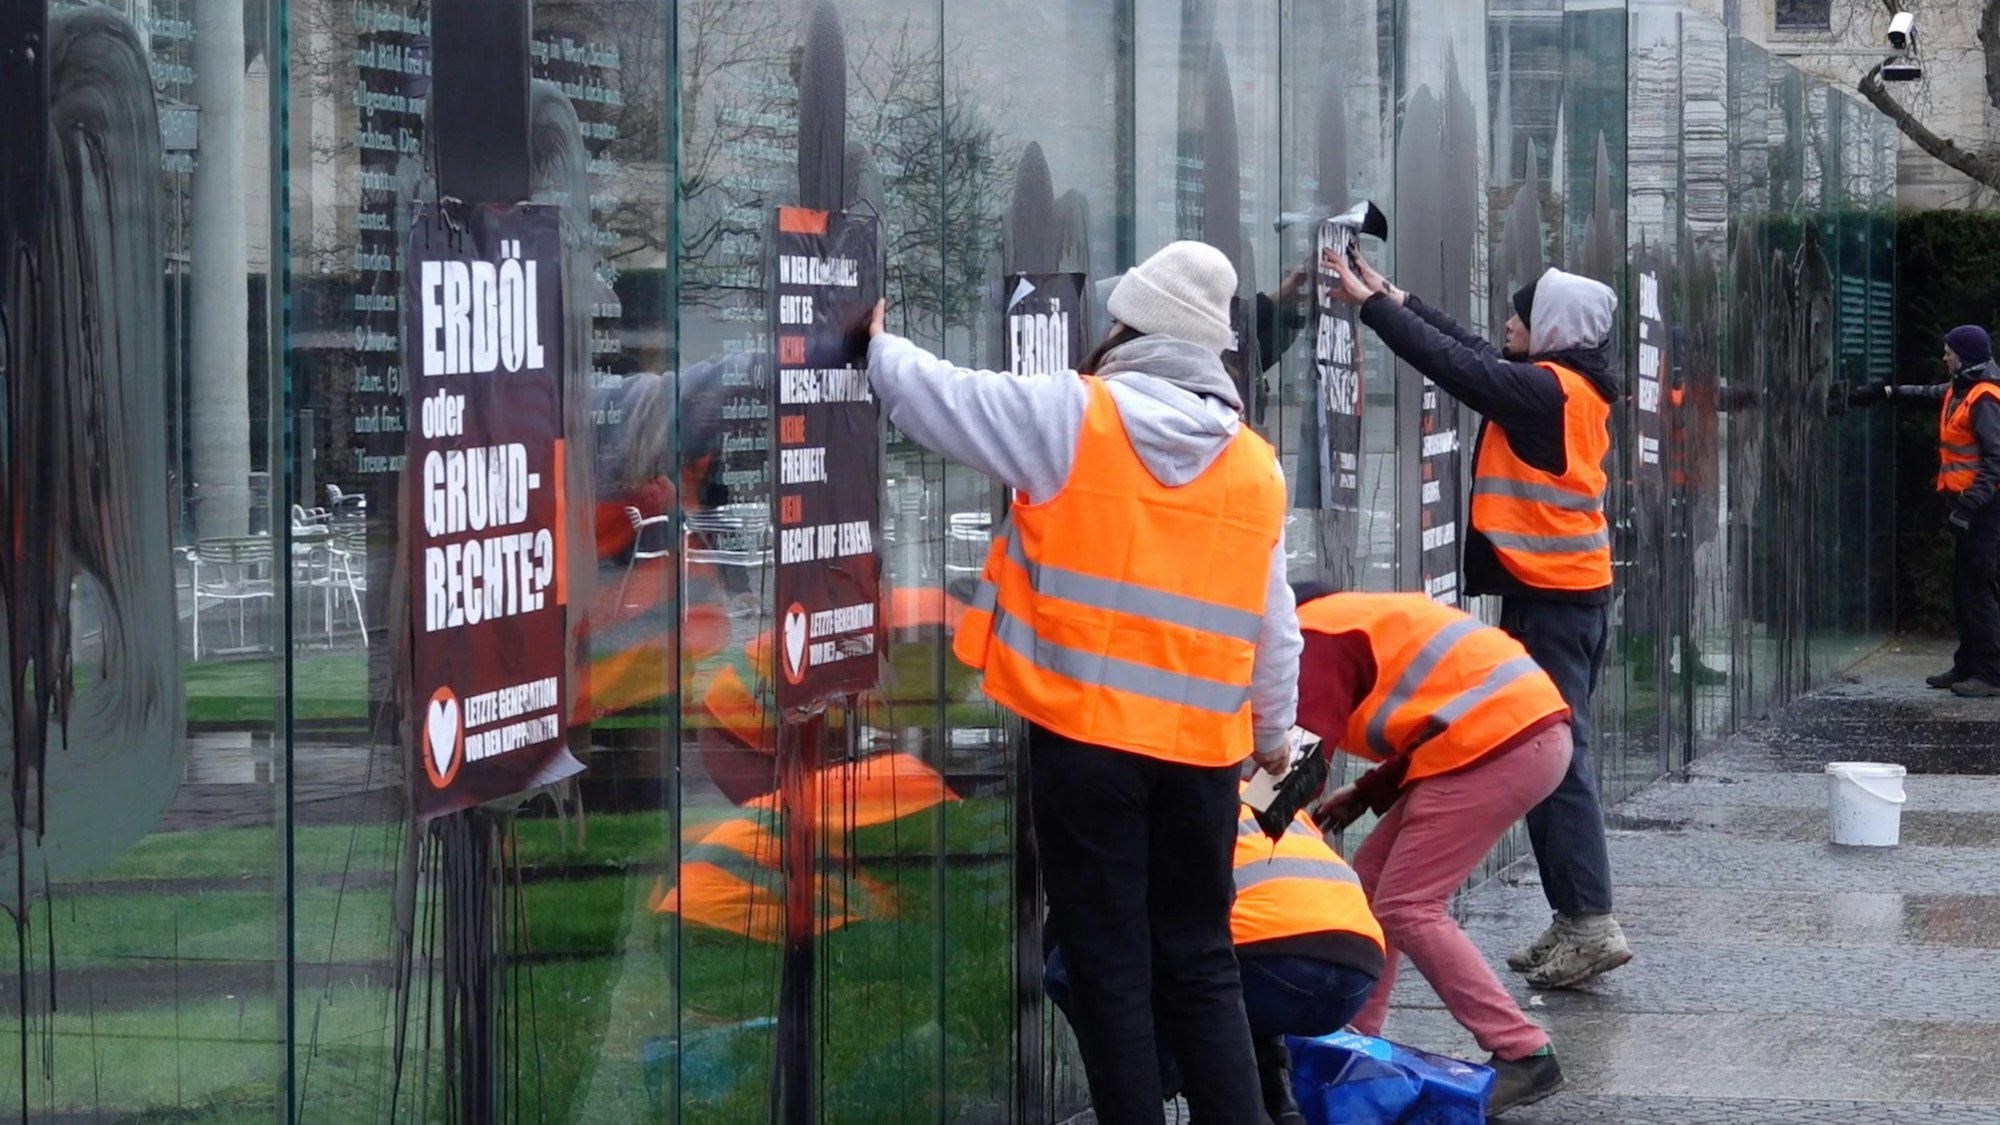 Klimaaktivisten der „Letzten Generation“ beschmieren und plakatieren am Samstag die gläserne Grundgesetz-Skulptur am Bundestag.